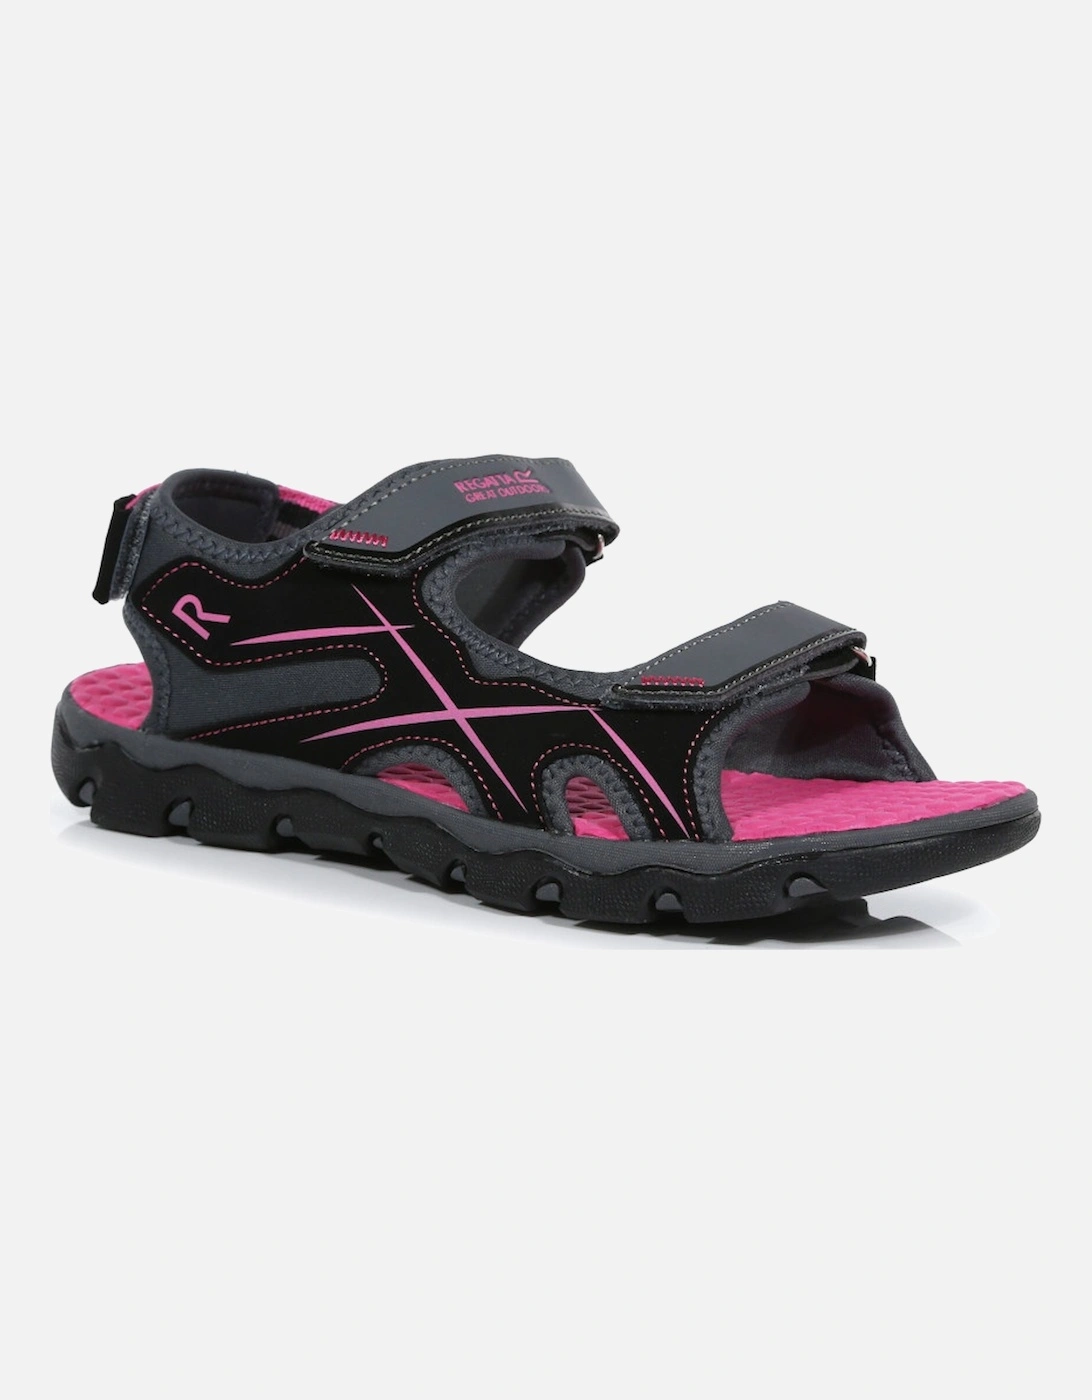 Boys & Girls Kota Drift Lightweight Walking Sandals, 3 of 2